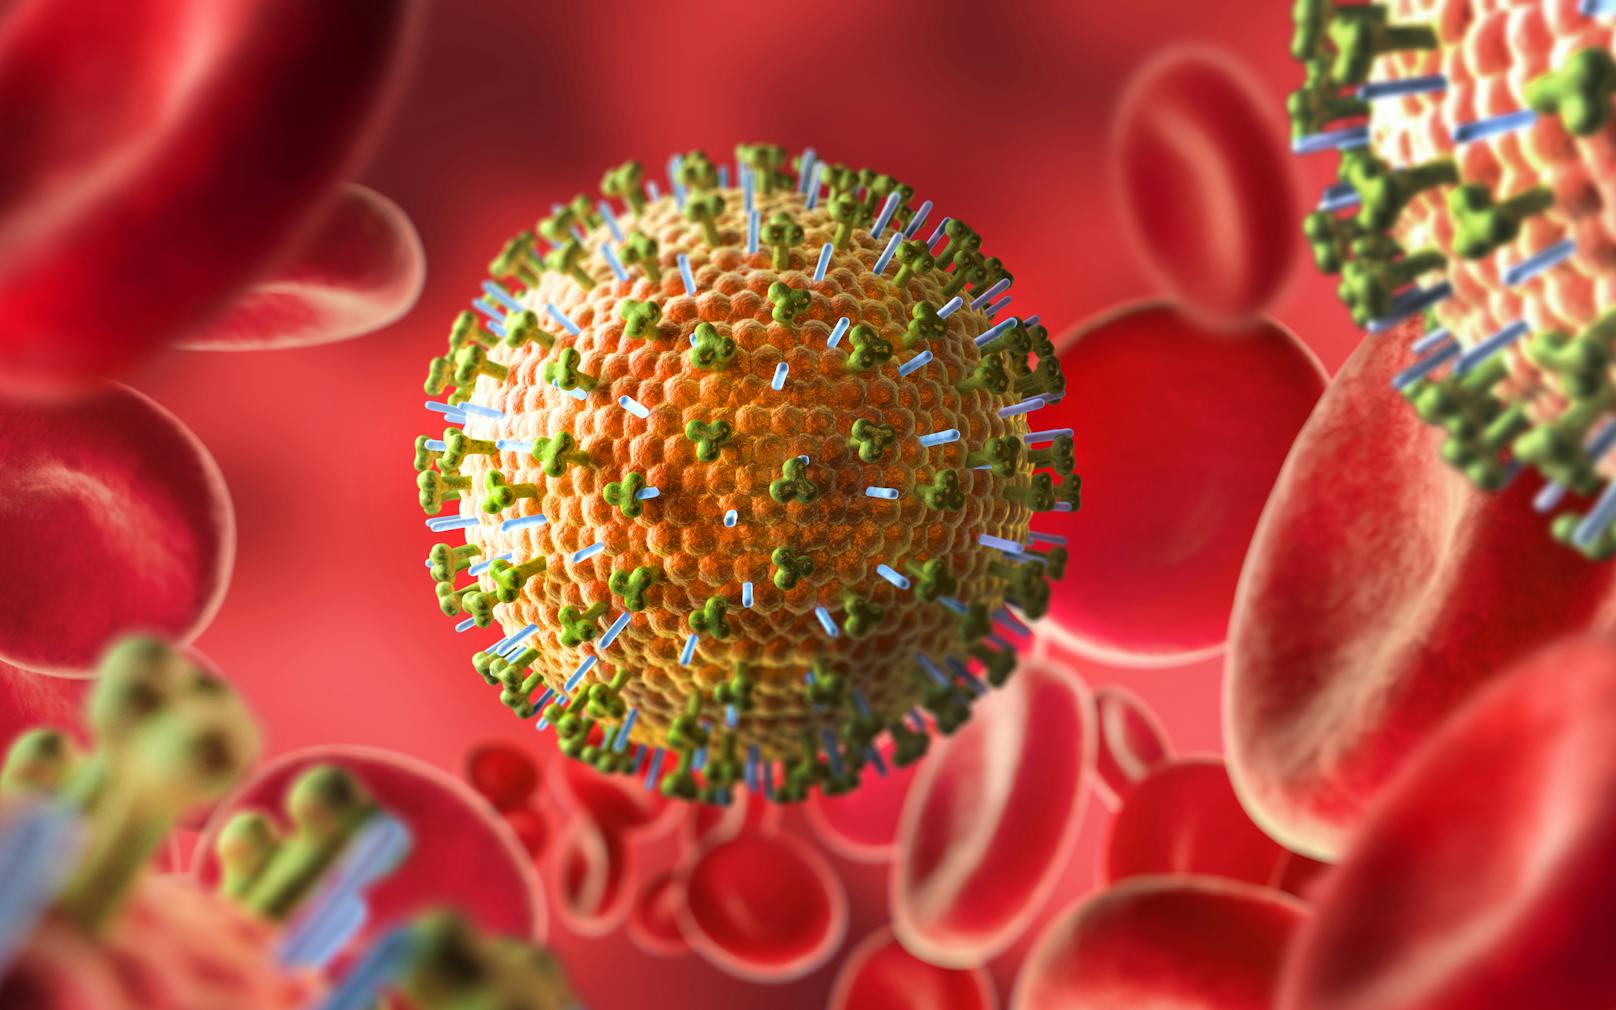 Die Forschung an Viren sollte wegen der Coronavirus-Pandemie nicht vernachlässigt werden, mahnen chinesische Wissenschafler. 